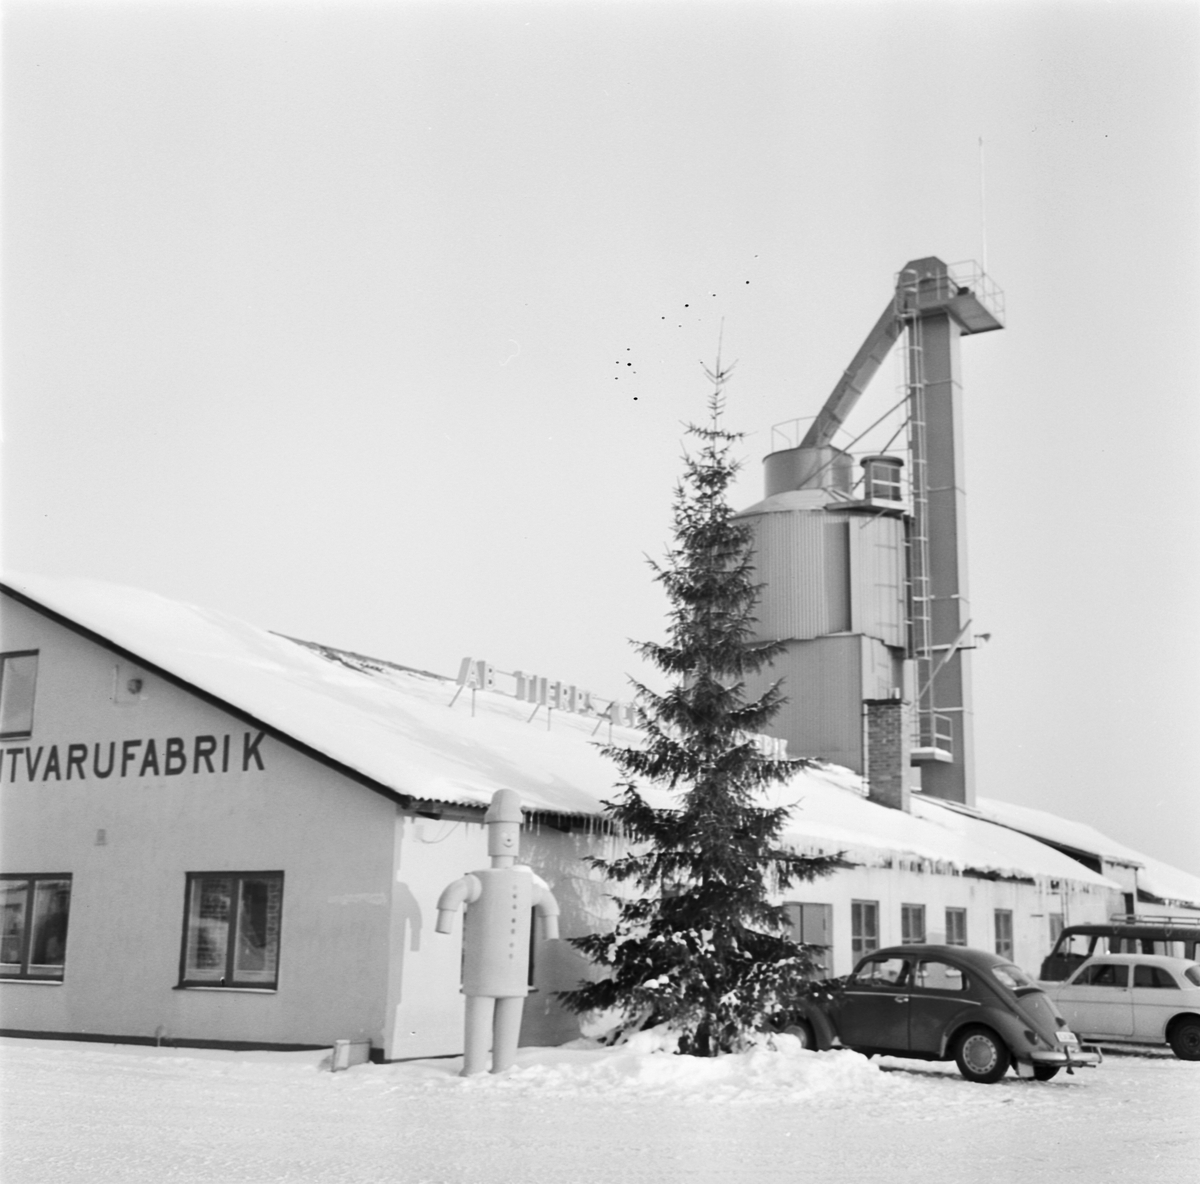 Tierps Cementvarufabrik 25 år, Uppland 1970